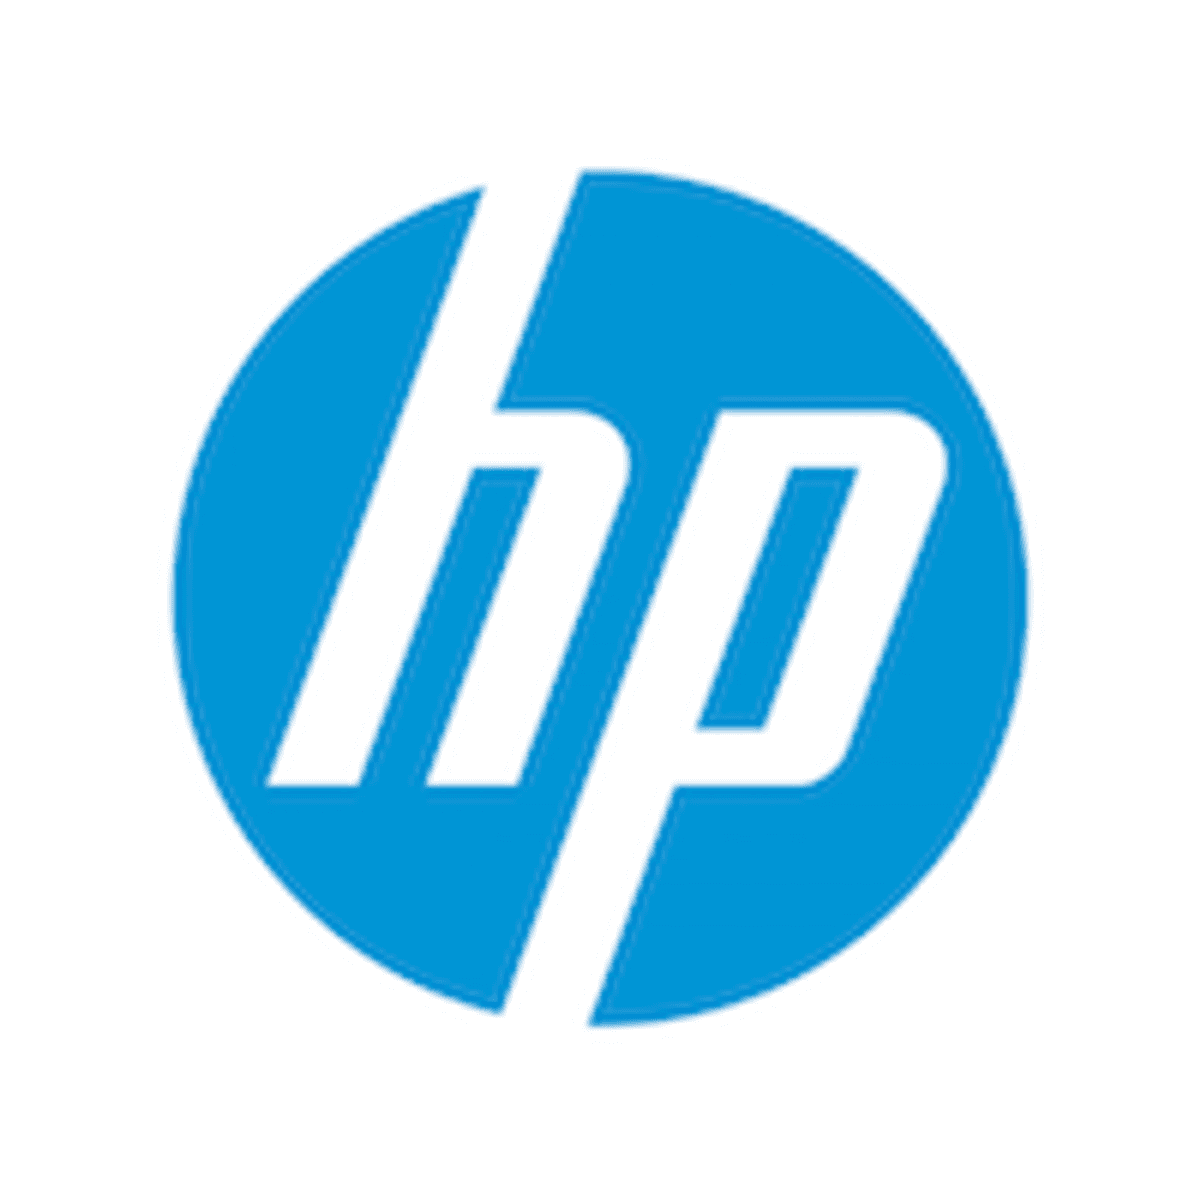 HP maakt duurzaamheidsdoelstellingen voor 2025 bekend image